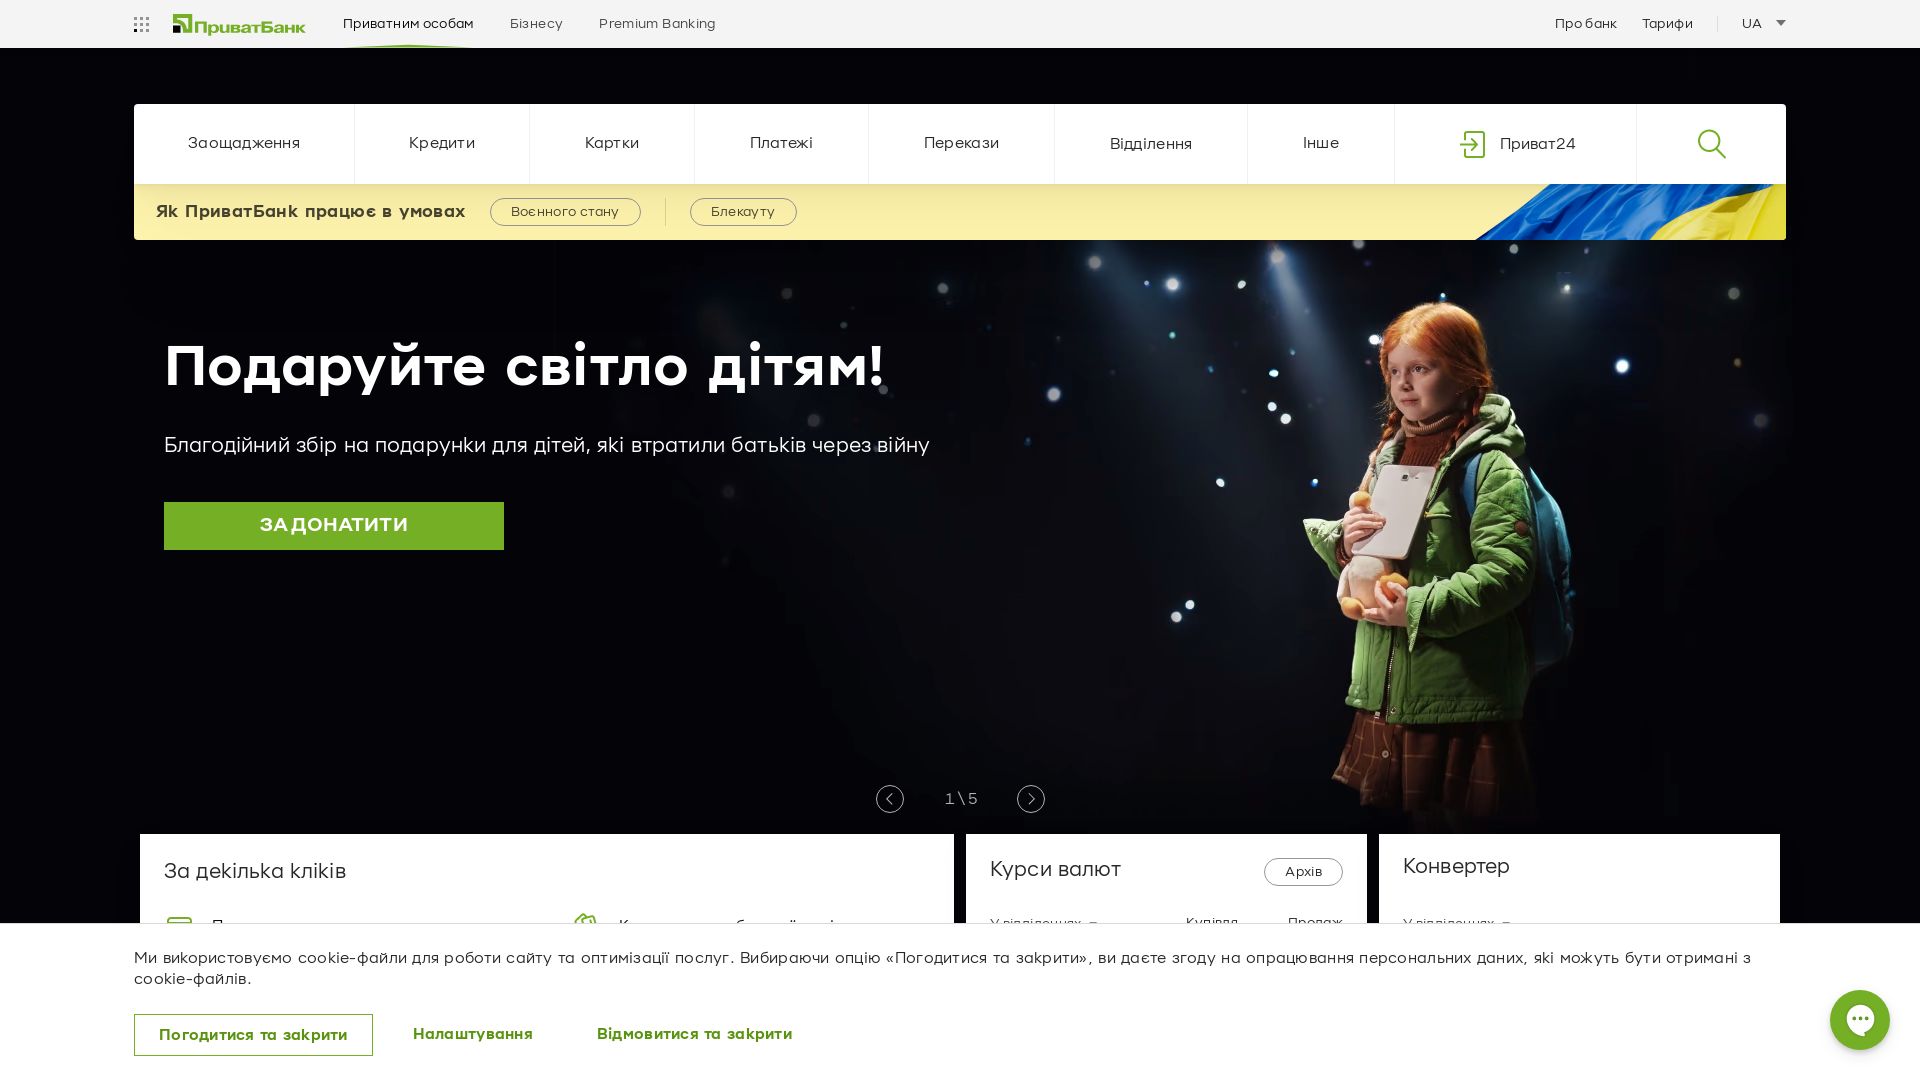 Estado web privatbank.ua está   ONLINE